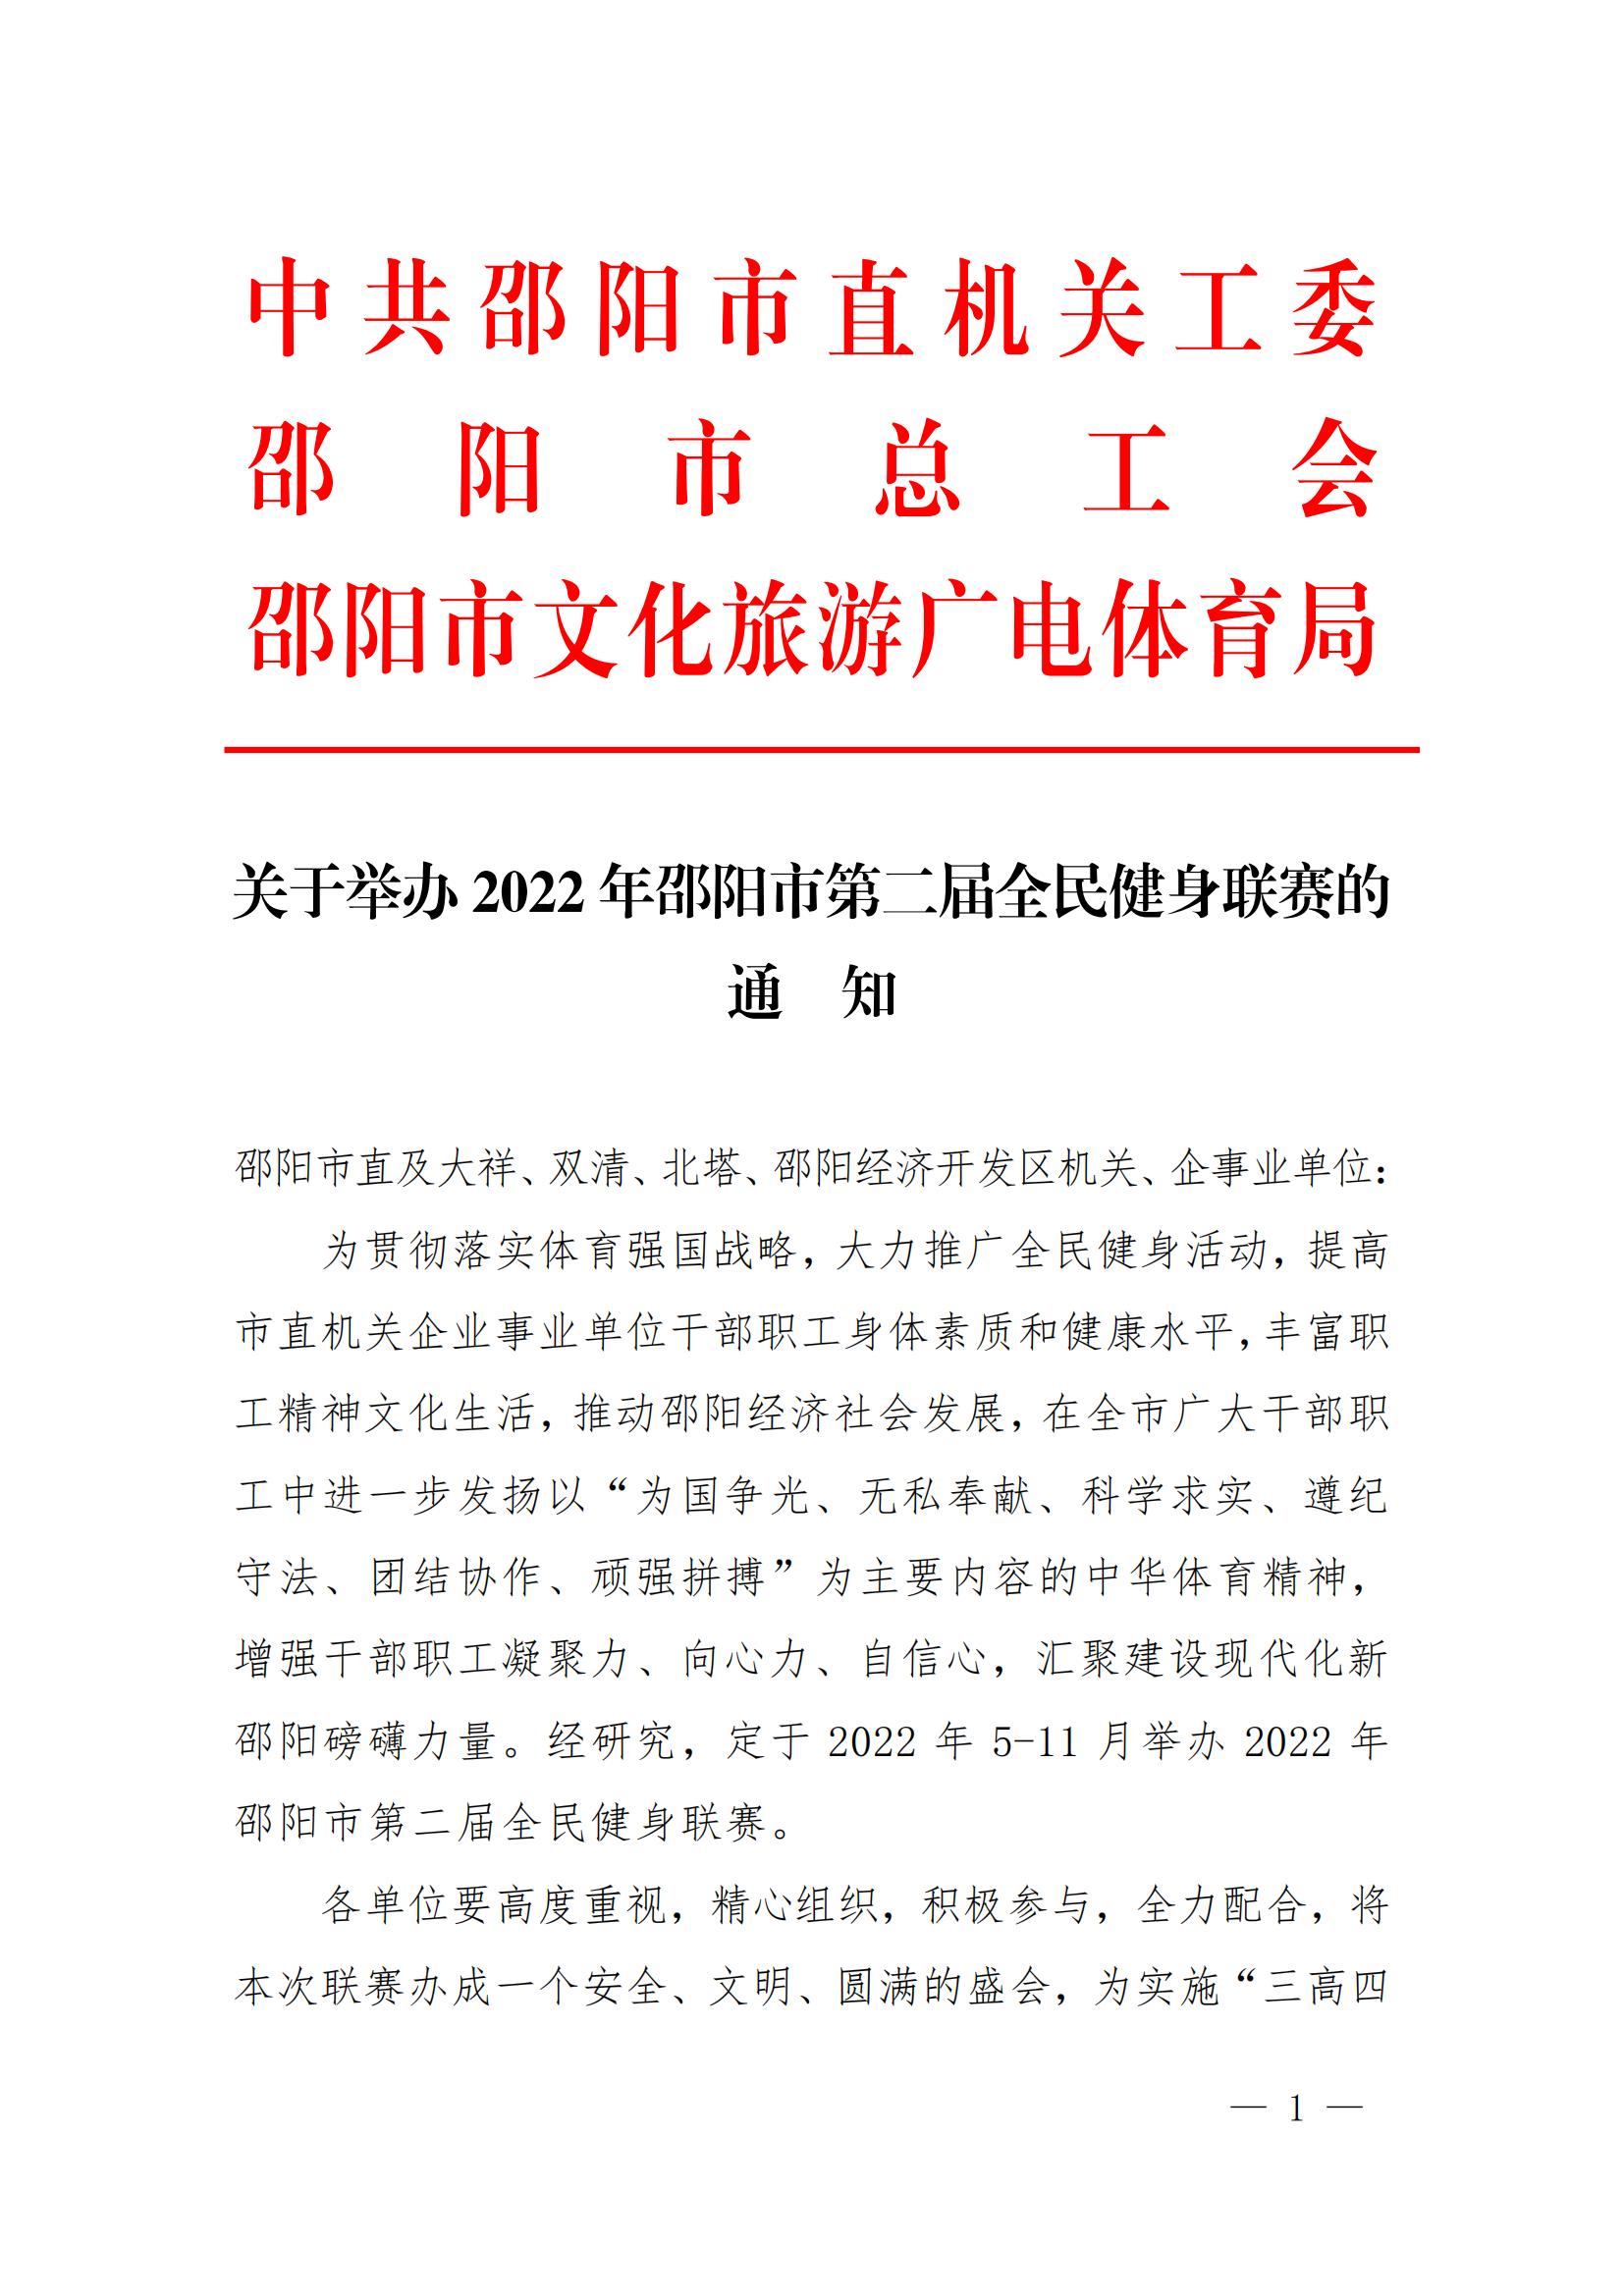 关于举办2022年邵阳市第二届全民健身联赛的通知_邵商网